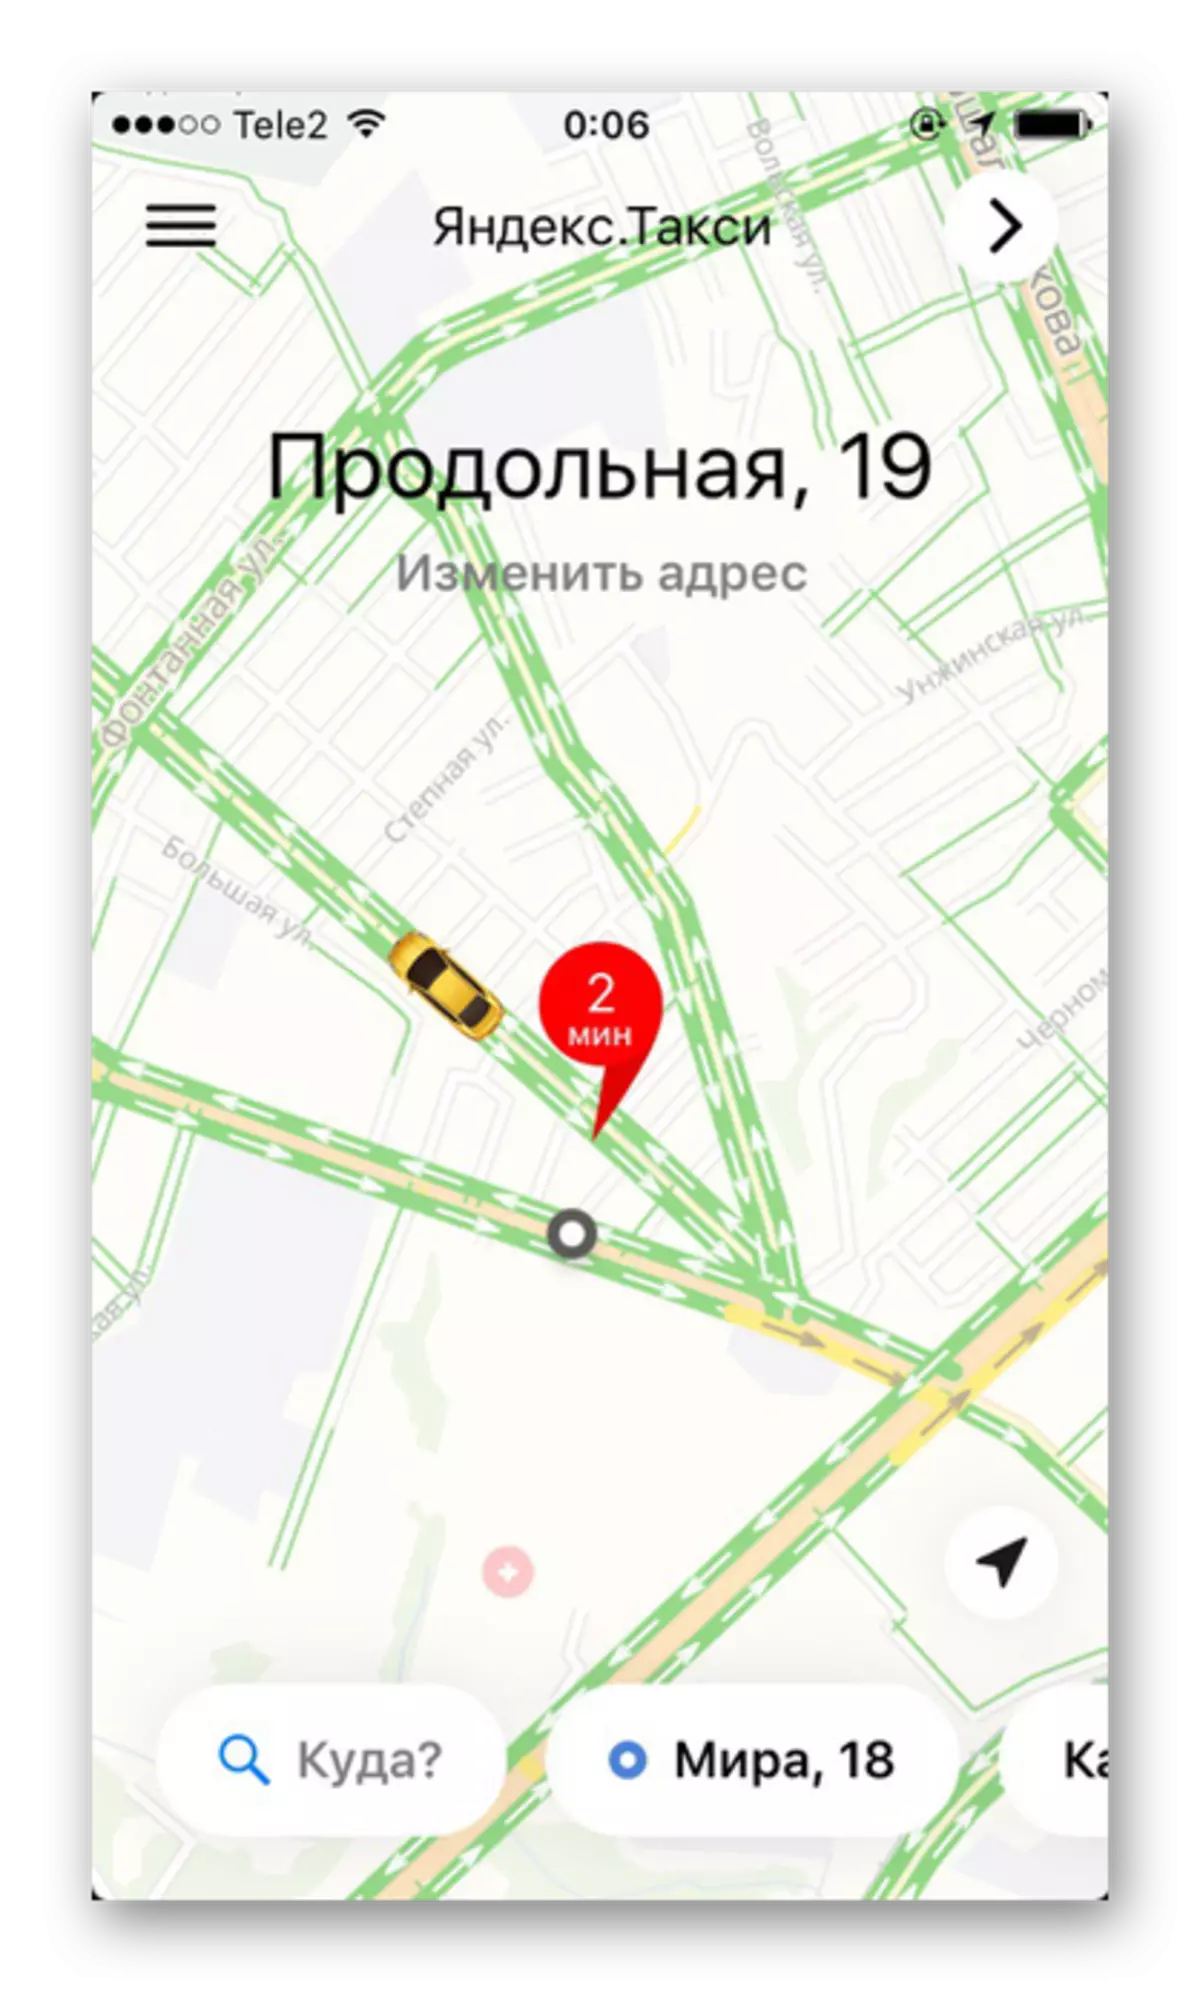 Galluogi tagfeydd traffig a llwythi gwaith ffyrdd yn y cais Yandex.taxi ar iPhone